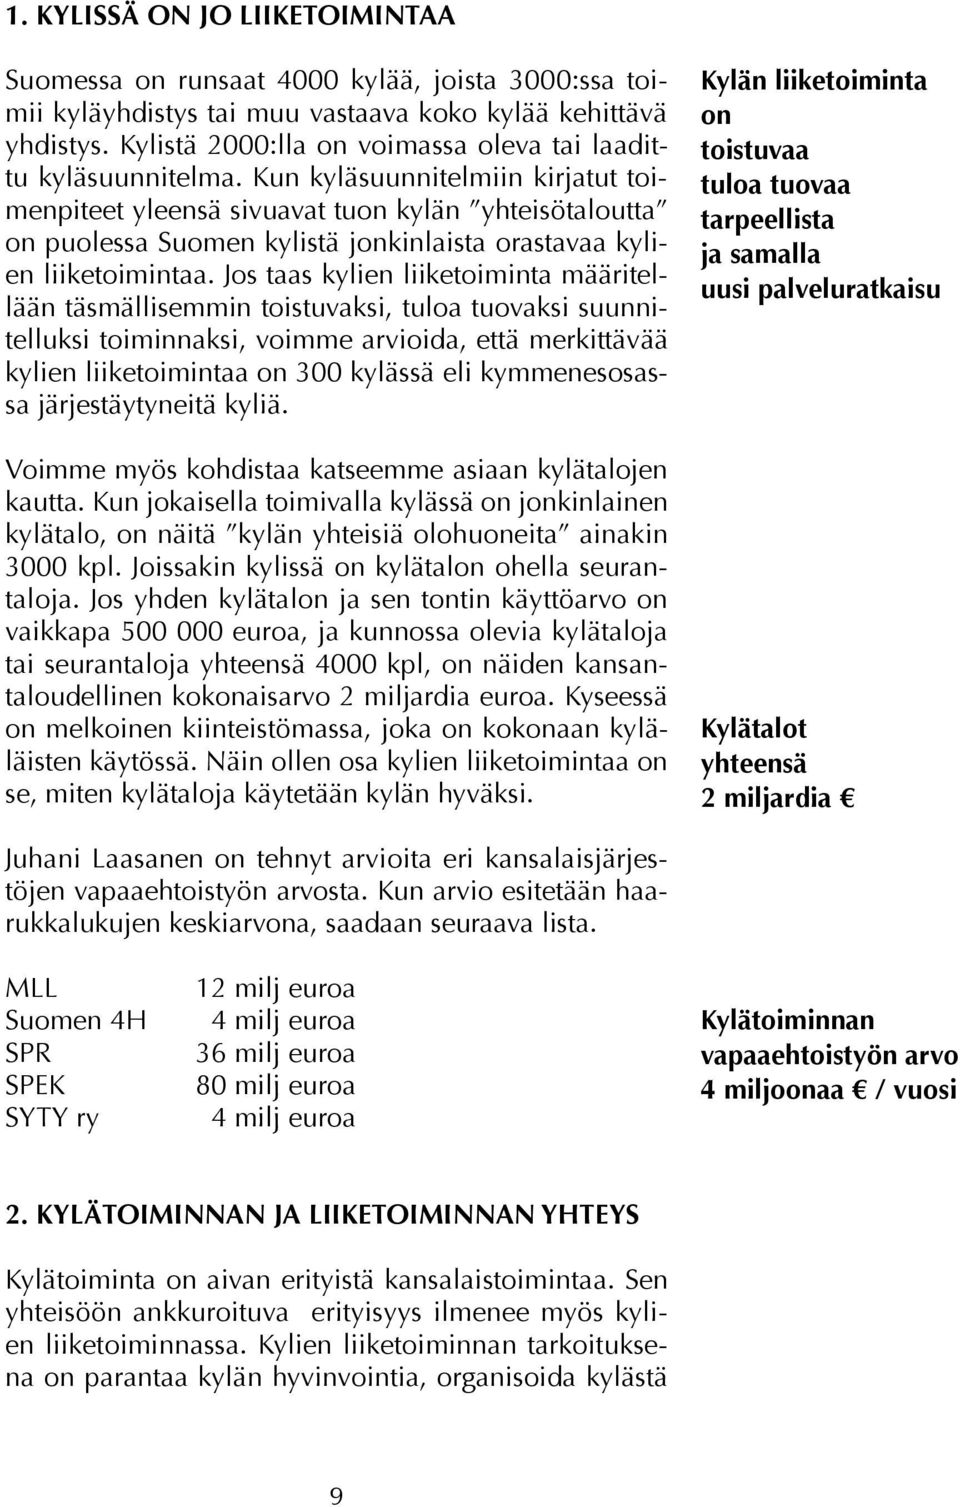 Kun kyläsuunnitelmiin kirjatut toimenpiteet yleensä sivuavat tuon kylän yhteisötaloutta on puolessa Suomen kylistä jonkinlaista orastavaa kylien liiketoimintaa.